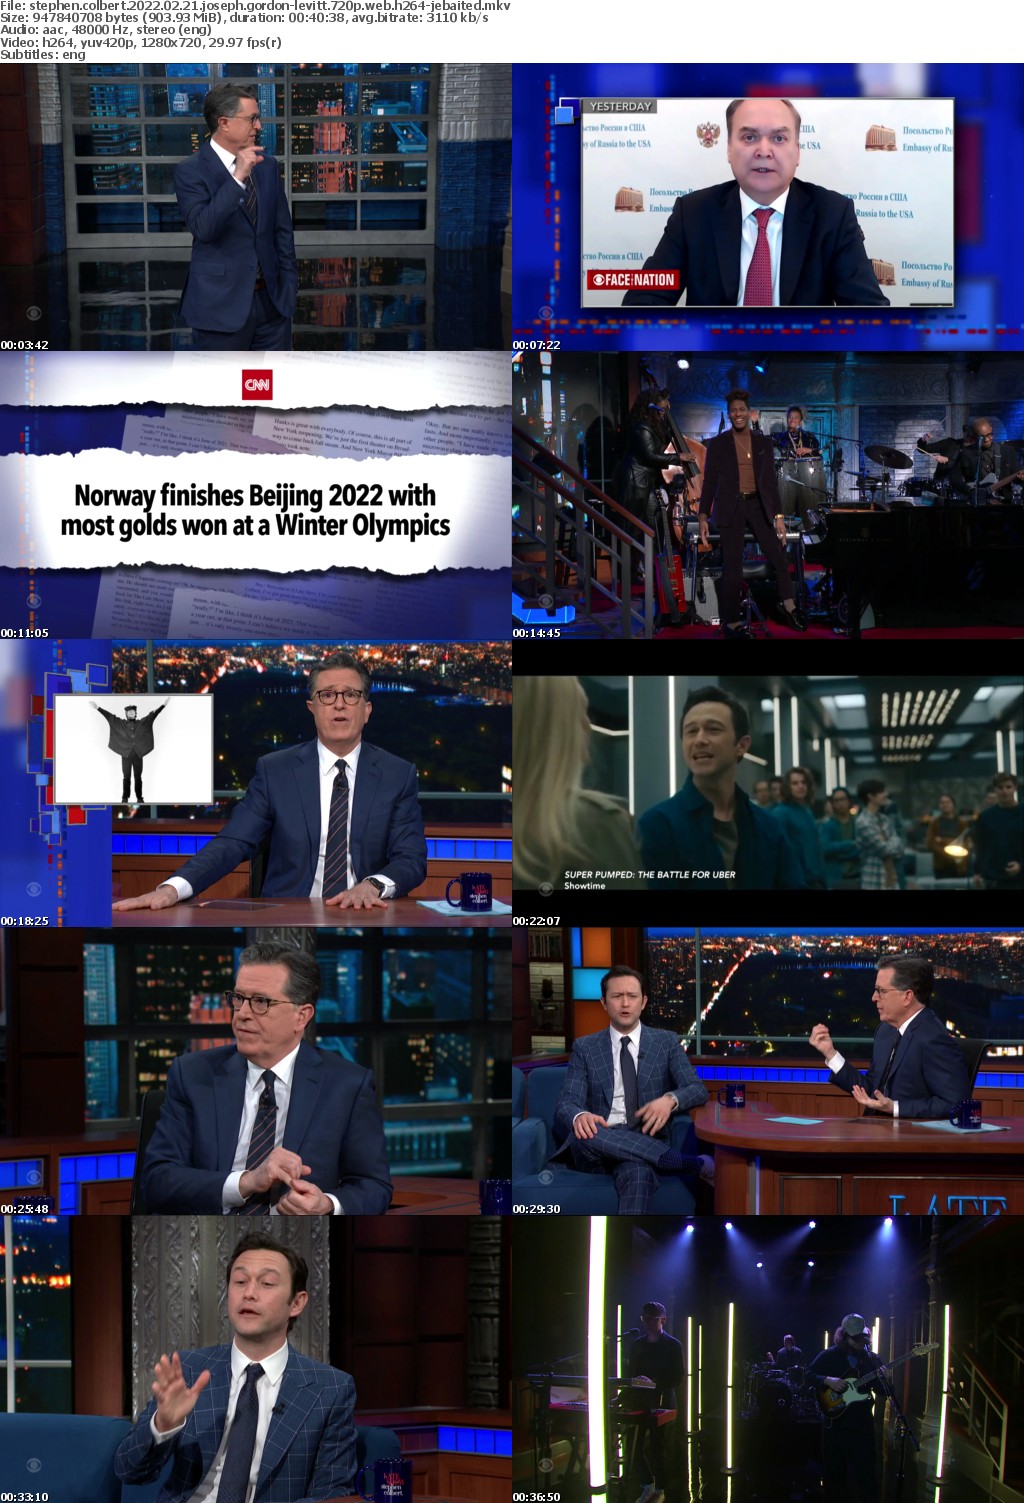 Stephen Colbert 2022 02 21 Joseph Gordon-Levitt 720p WEB H264-JEBAITED